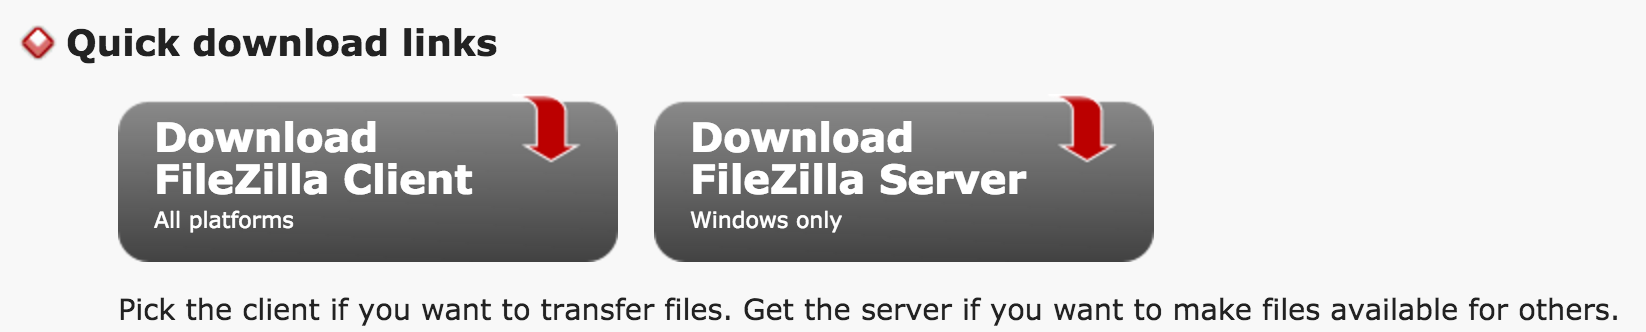  filezilla-download-pagina-1